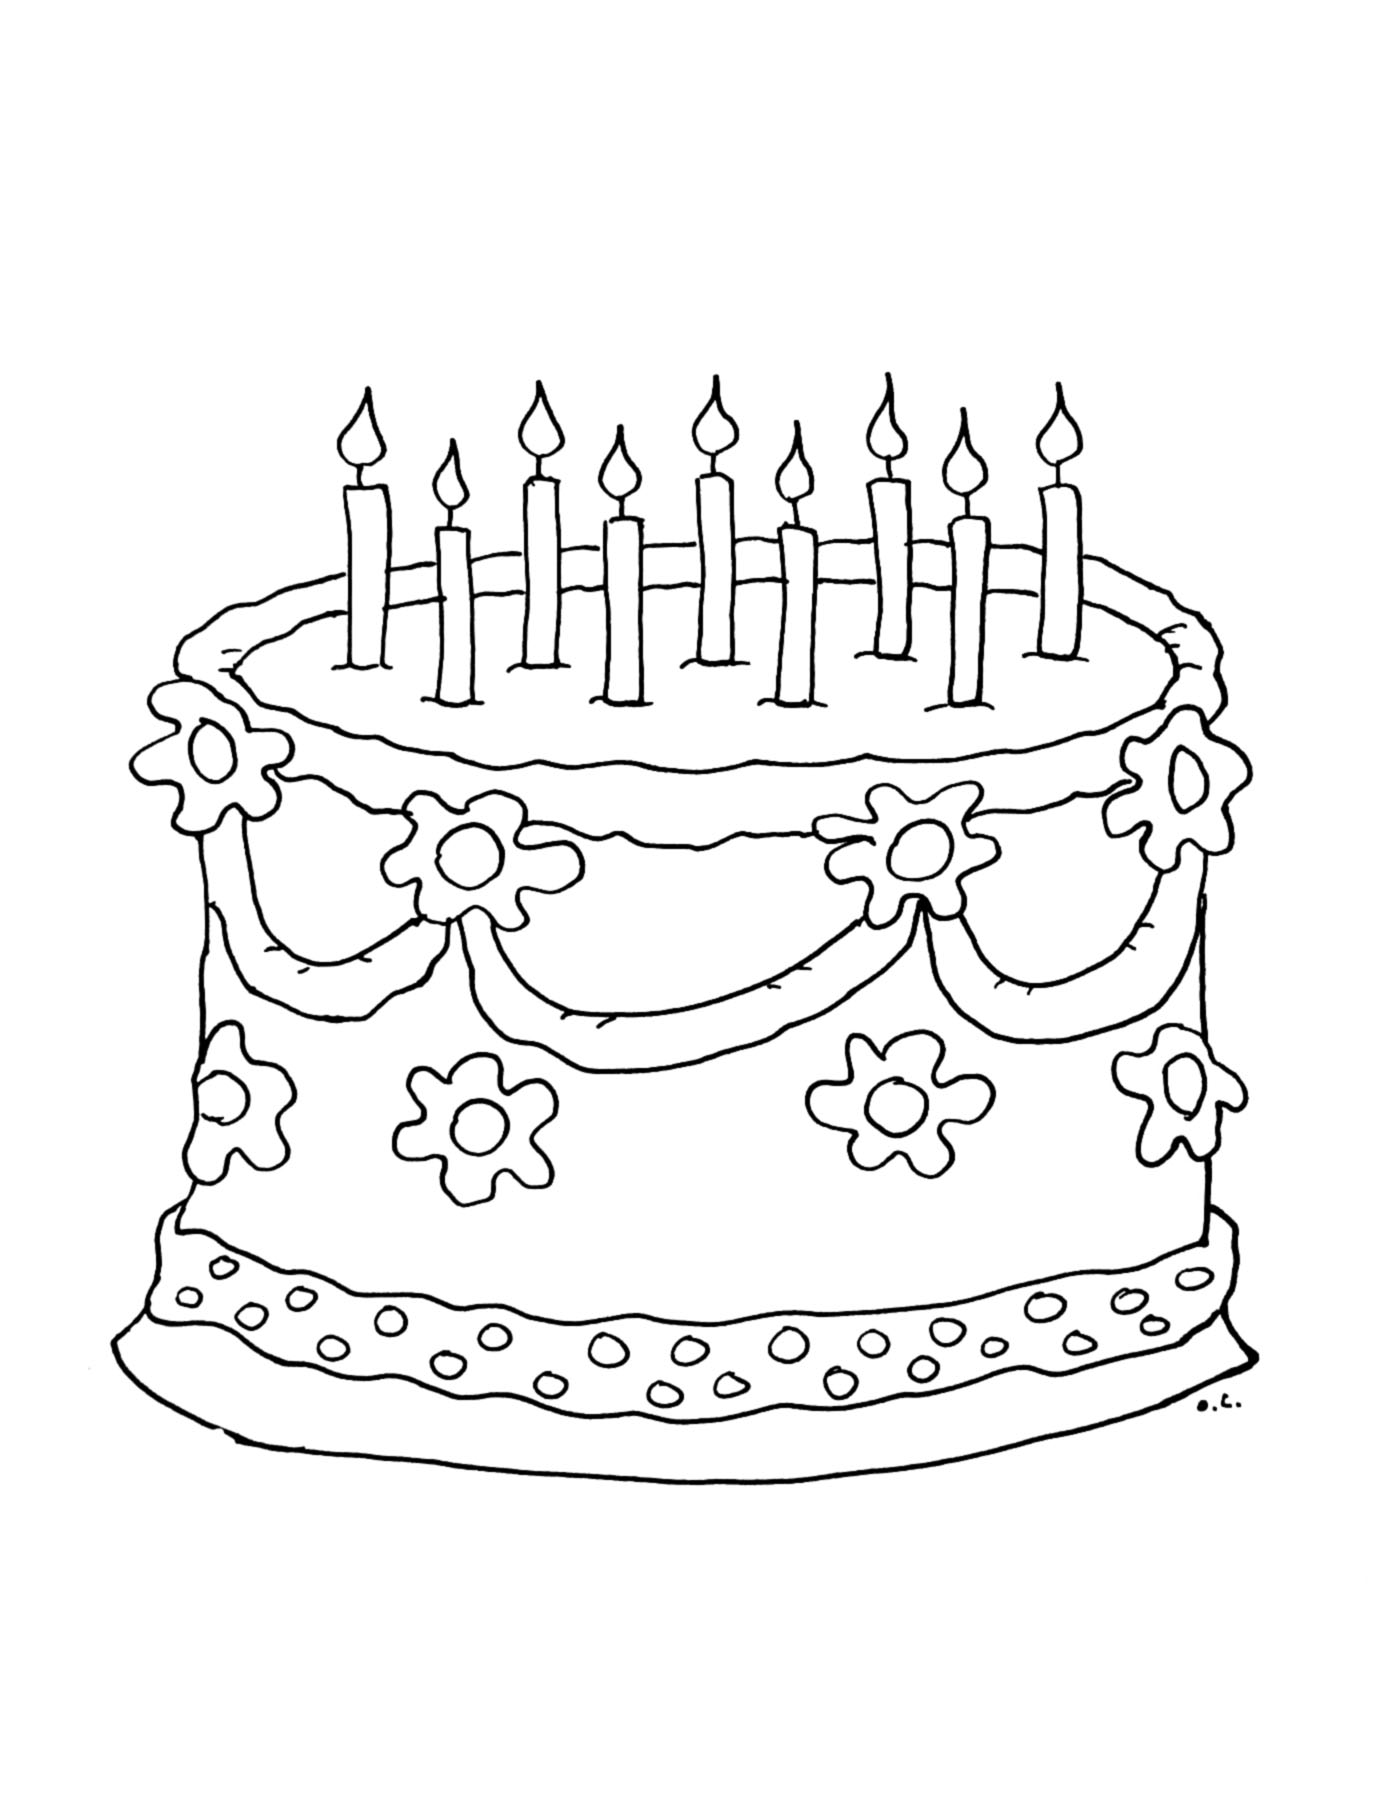 Coloriage d'un gros gâteau d'anniversaire avec 9 bougies à souffler